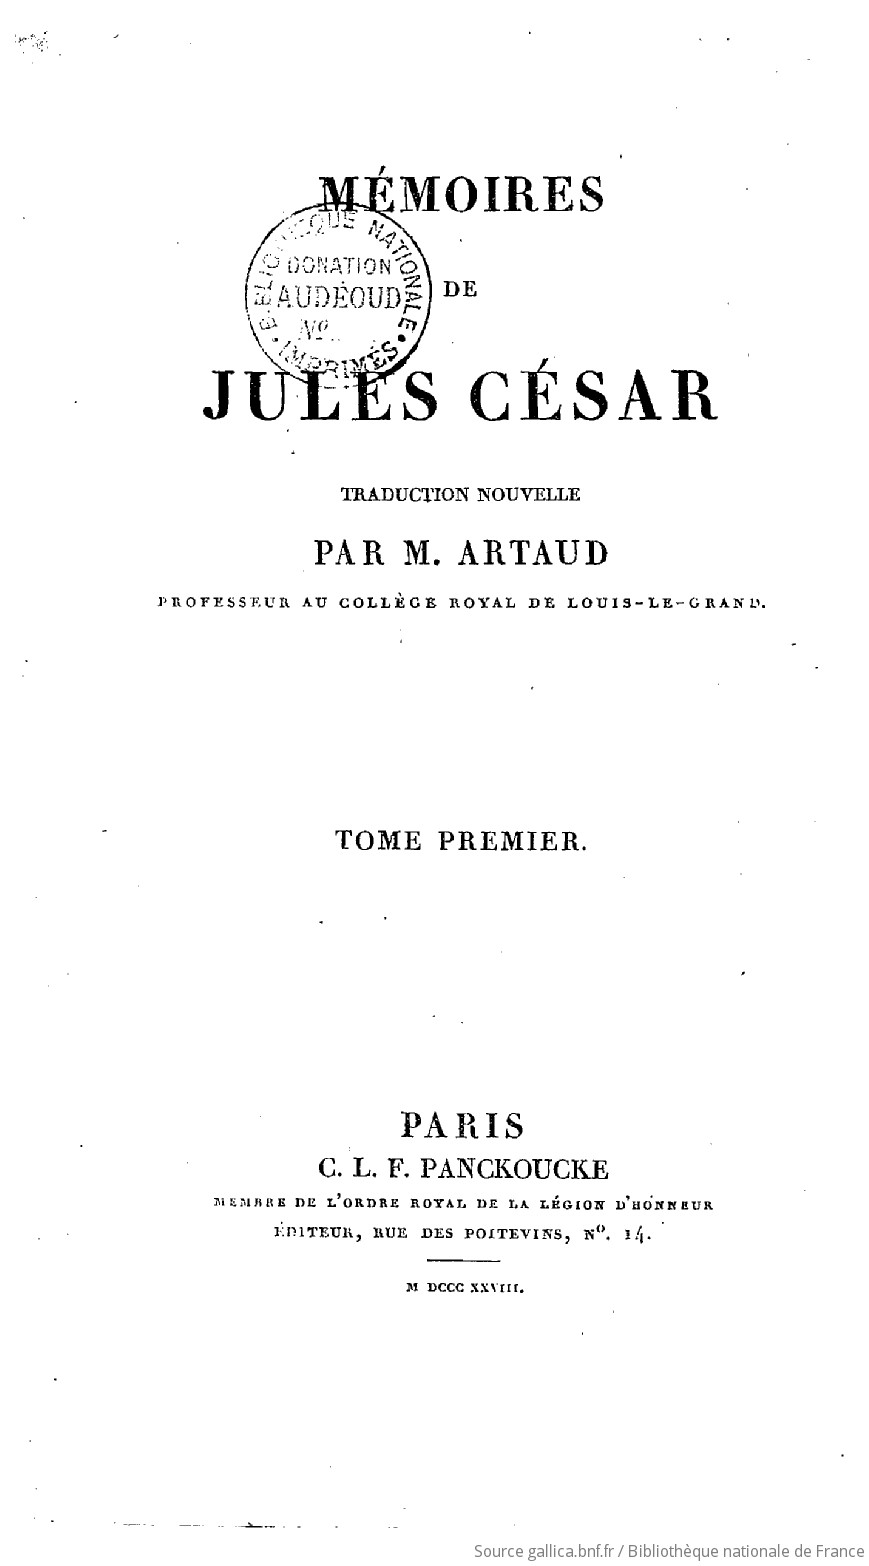 Memoires De Jules Cesar Tome 1 Trad Nouvelle Par M Artaud Avec Une Notice Sur Jules Cesar Par J L Laya Gallica